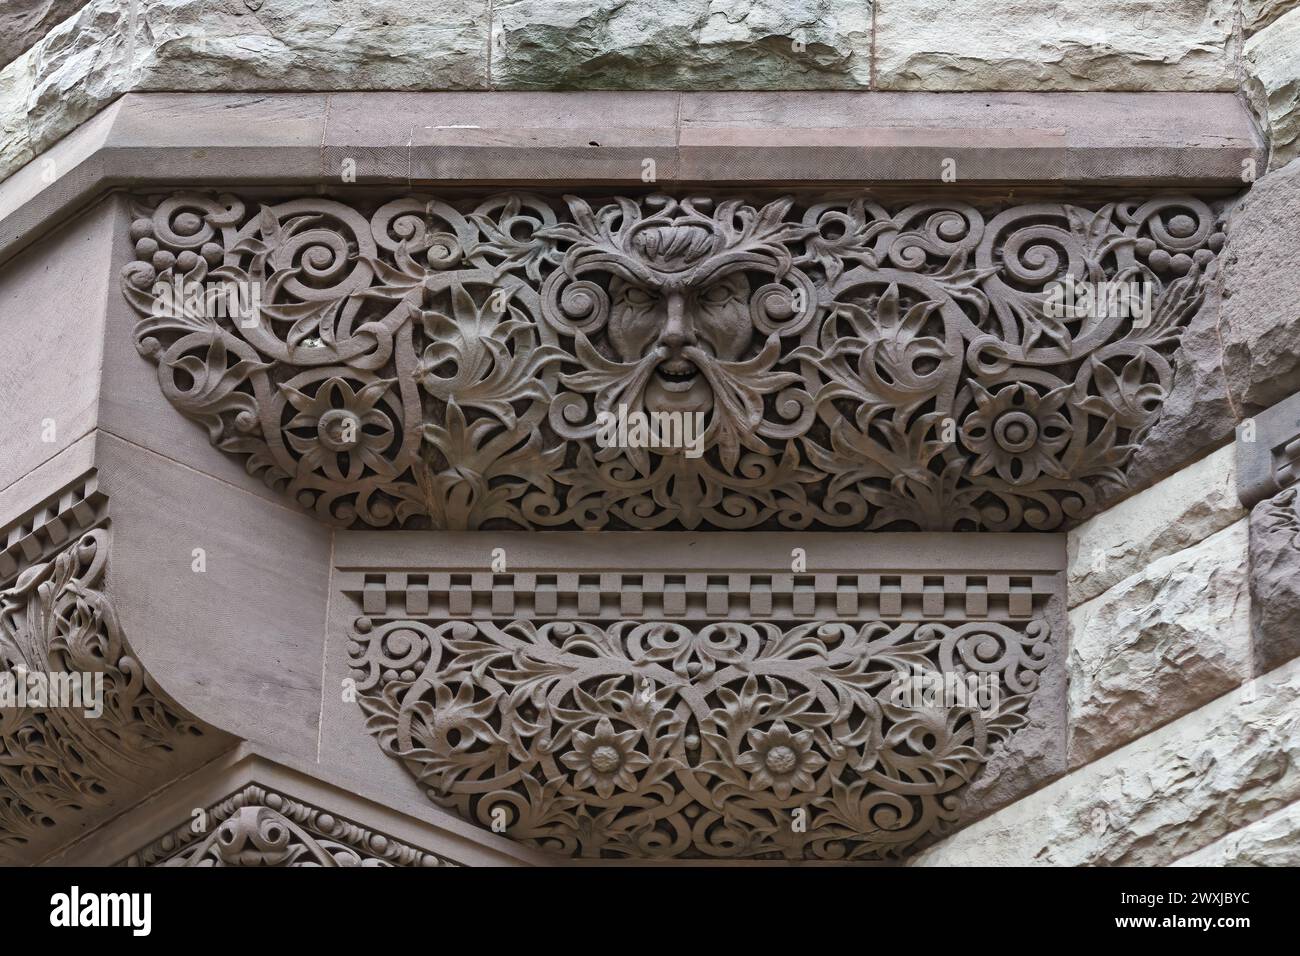 Architektonische Besonderheiten oder Details aus der Kolonialzeit im Old City Hall Building (1898), Toronto, Kanada. Teil einer Serie. Stockfoto